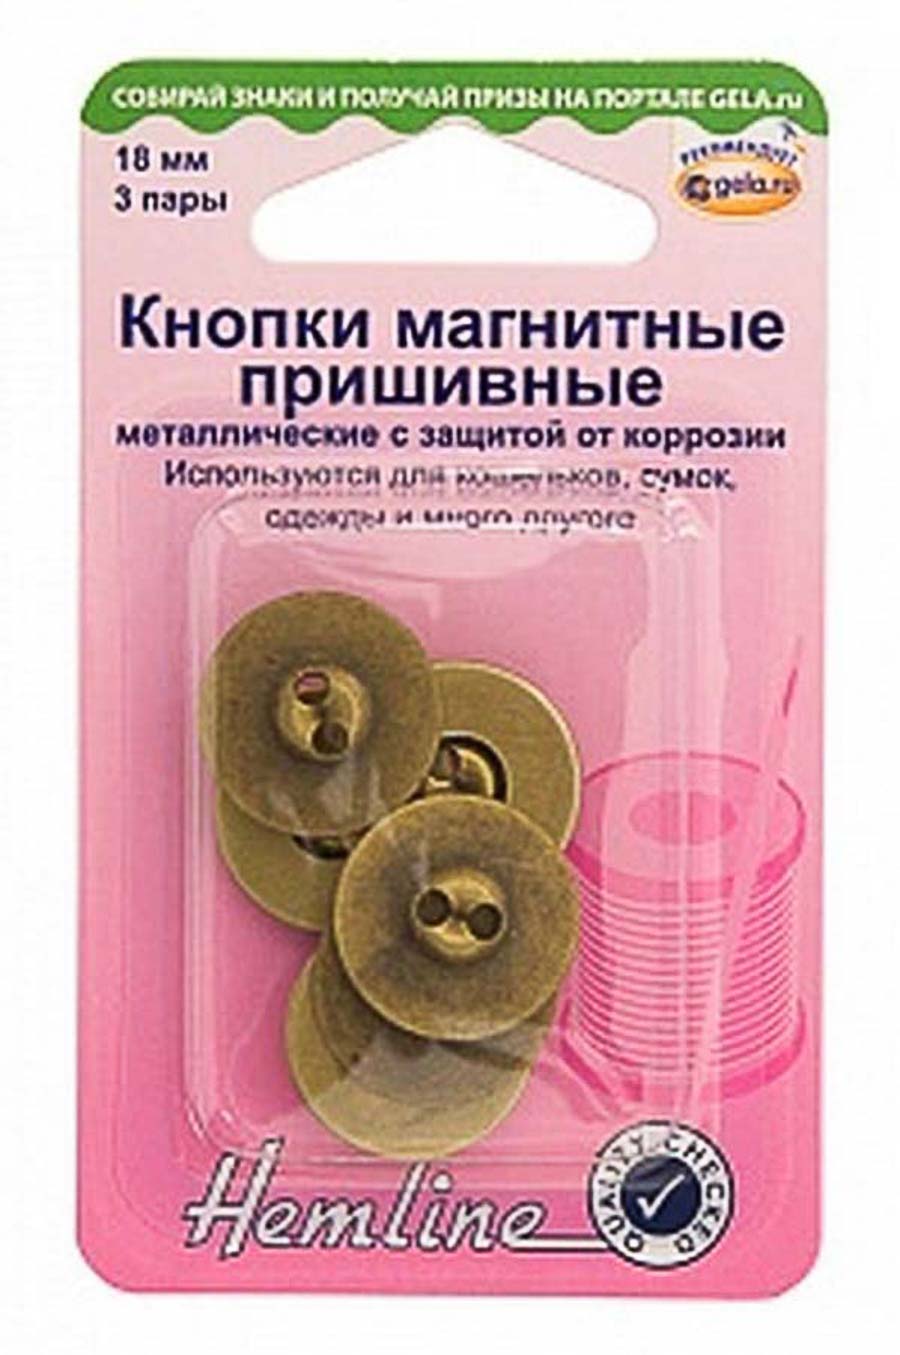 Кнопки магнитные пришивные "Hemline" 481.BS с защитой от коррозии, цвет медь, 18мм, 3 пары